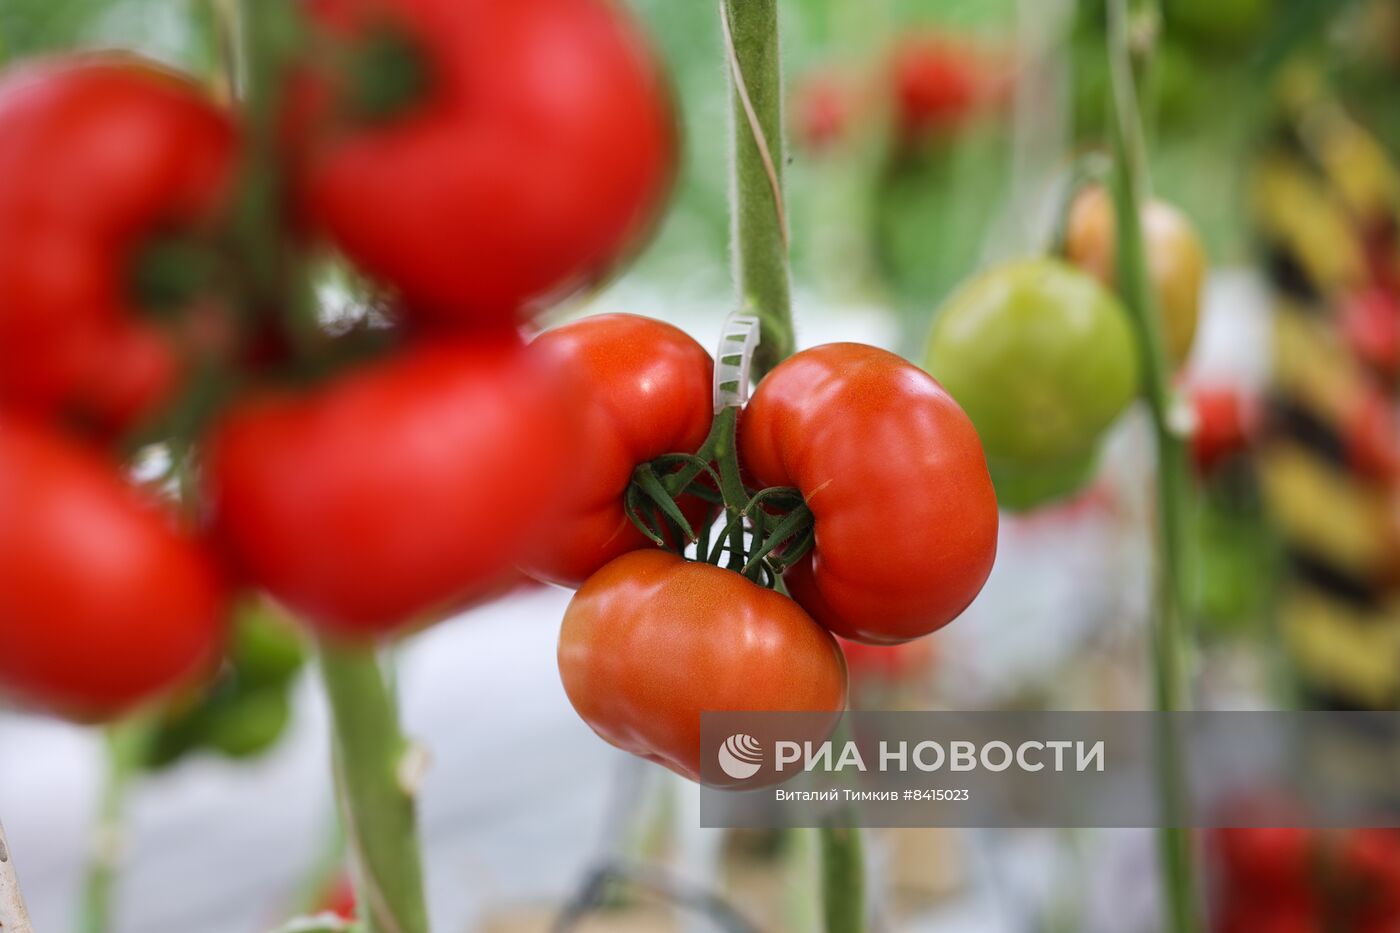 Работа центра селекции растений в Крымске